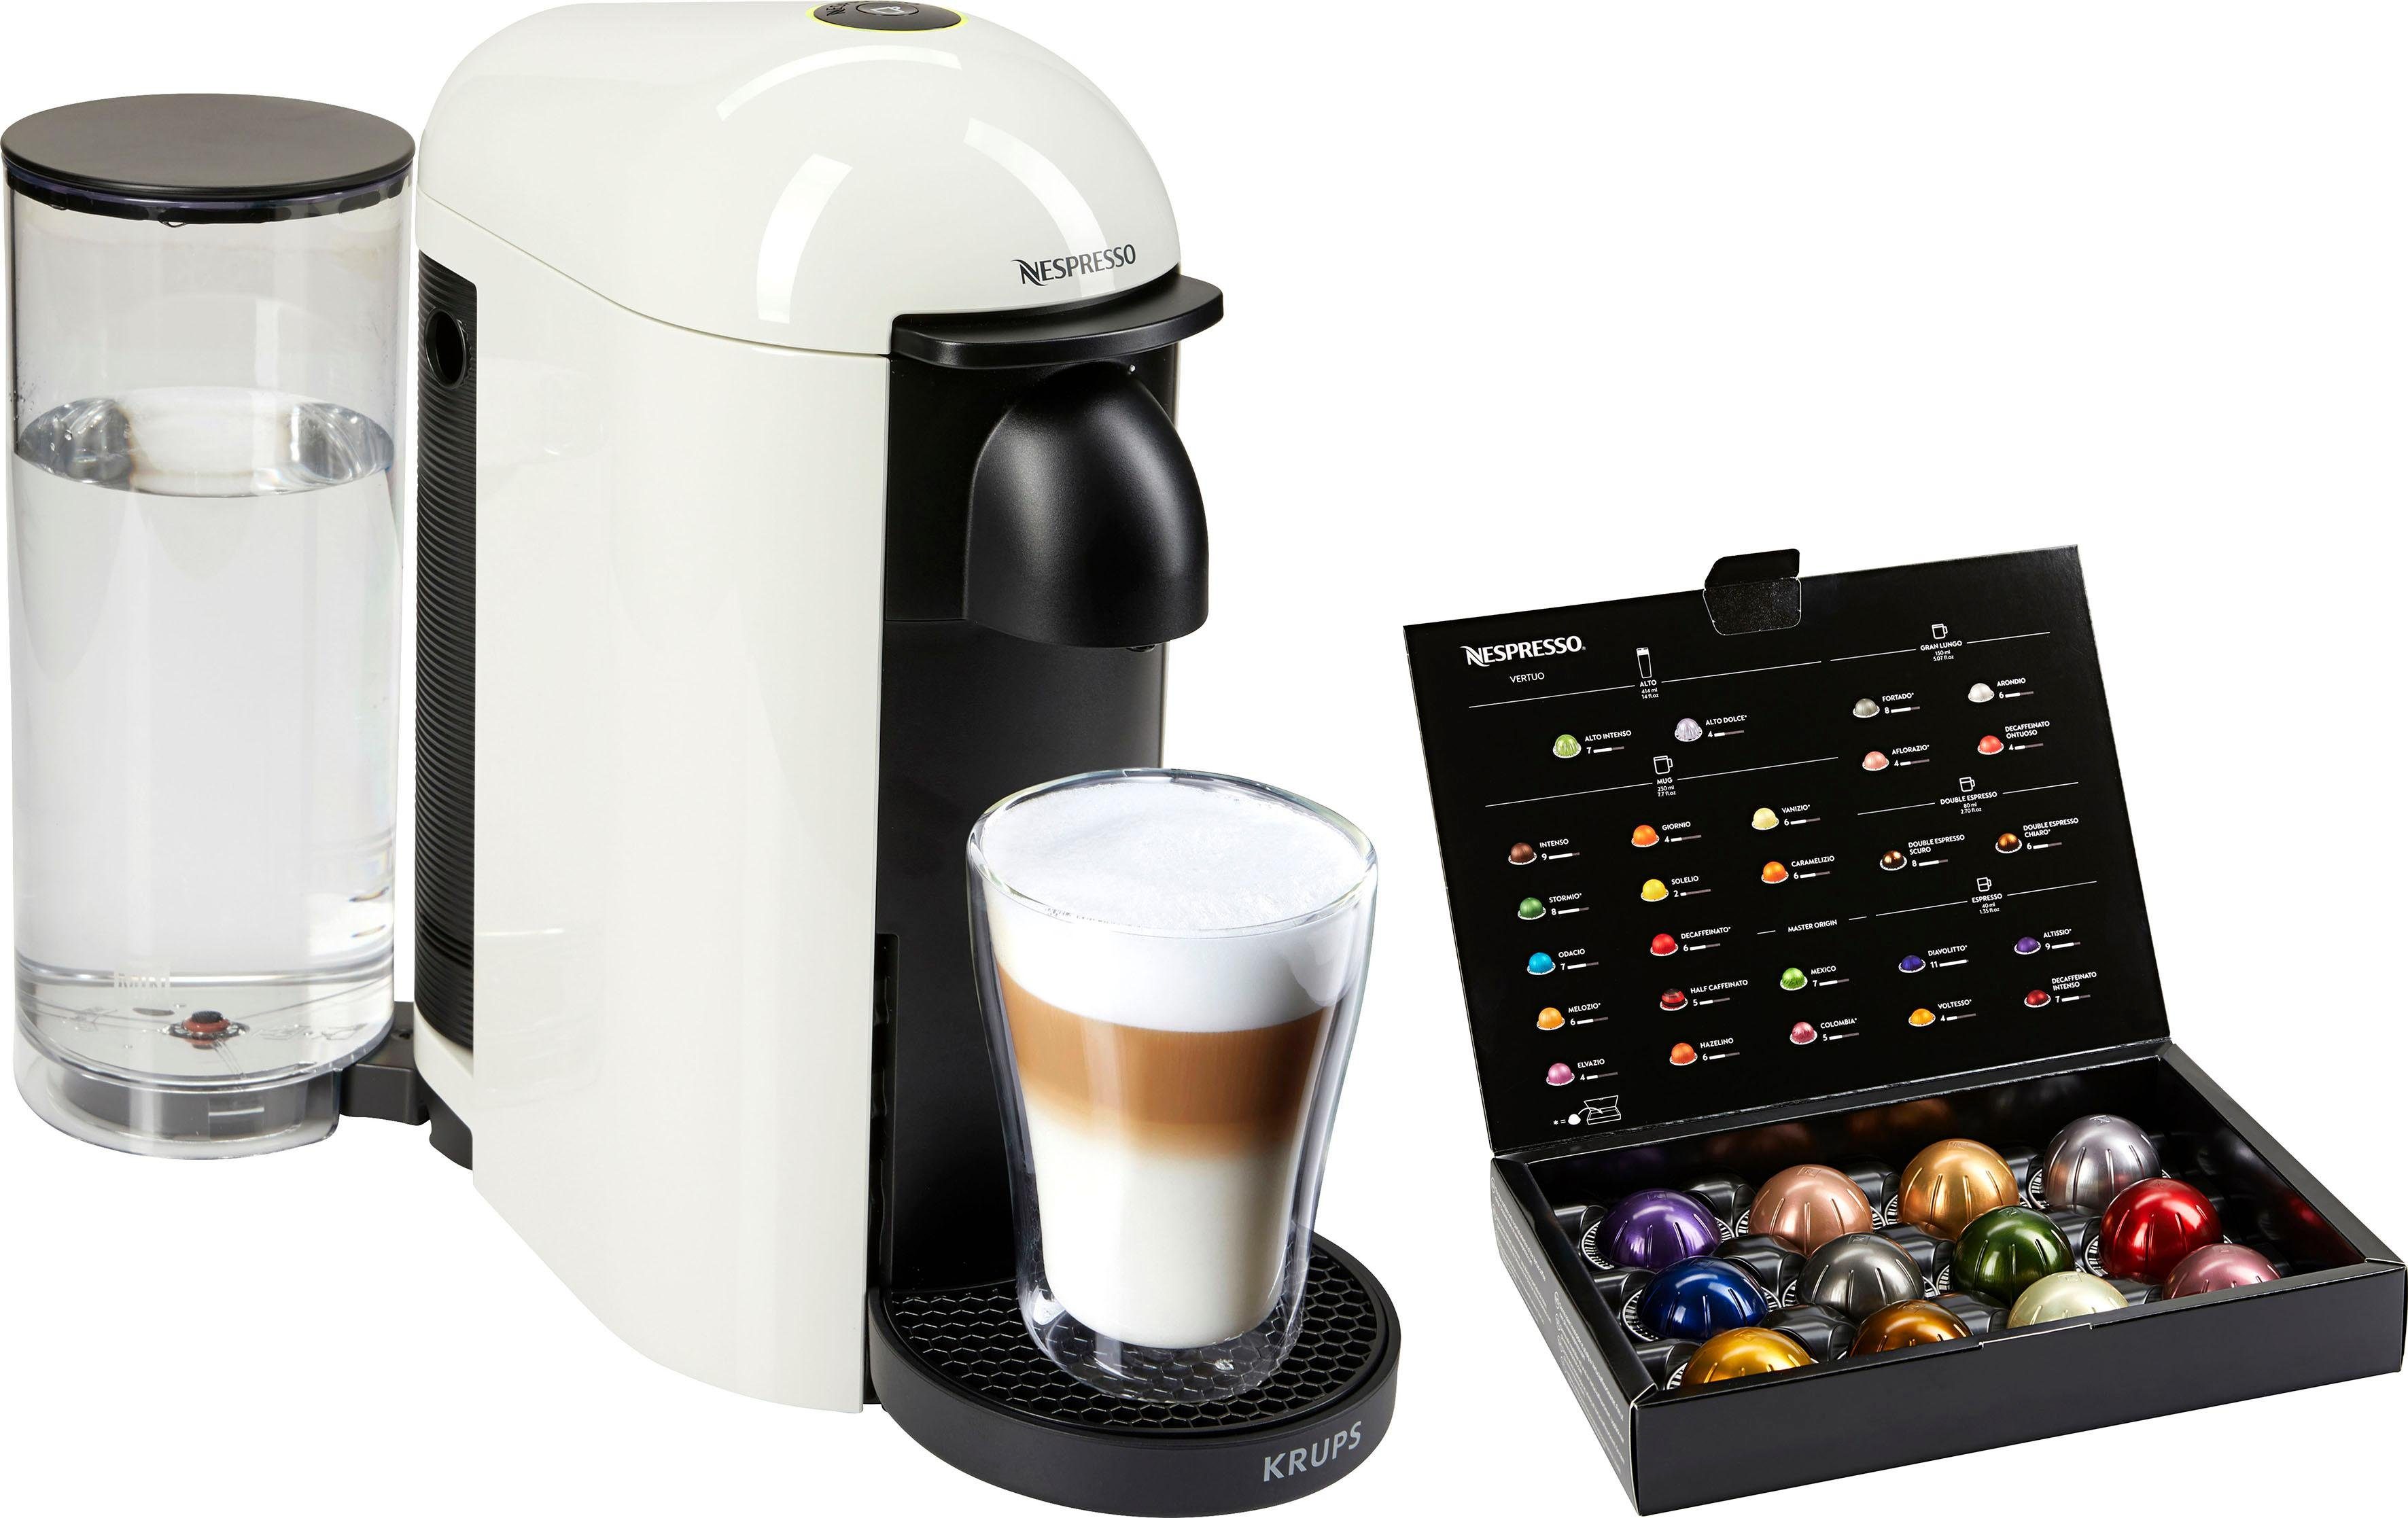 Nespresso Kapselmaschine Vertuo Plus XN9031 von Krups, Weiß, inkl.  Willkommenspaket mit 12 Kapseln online kaufen | OTTO